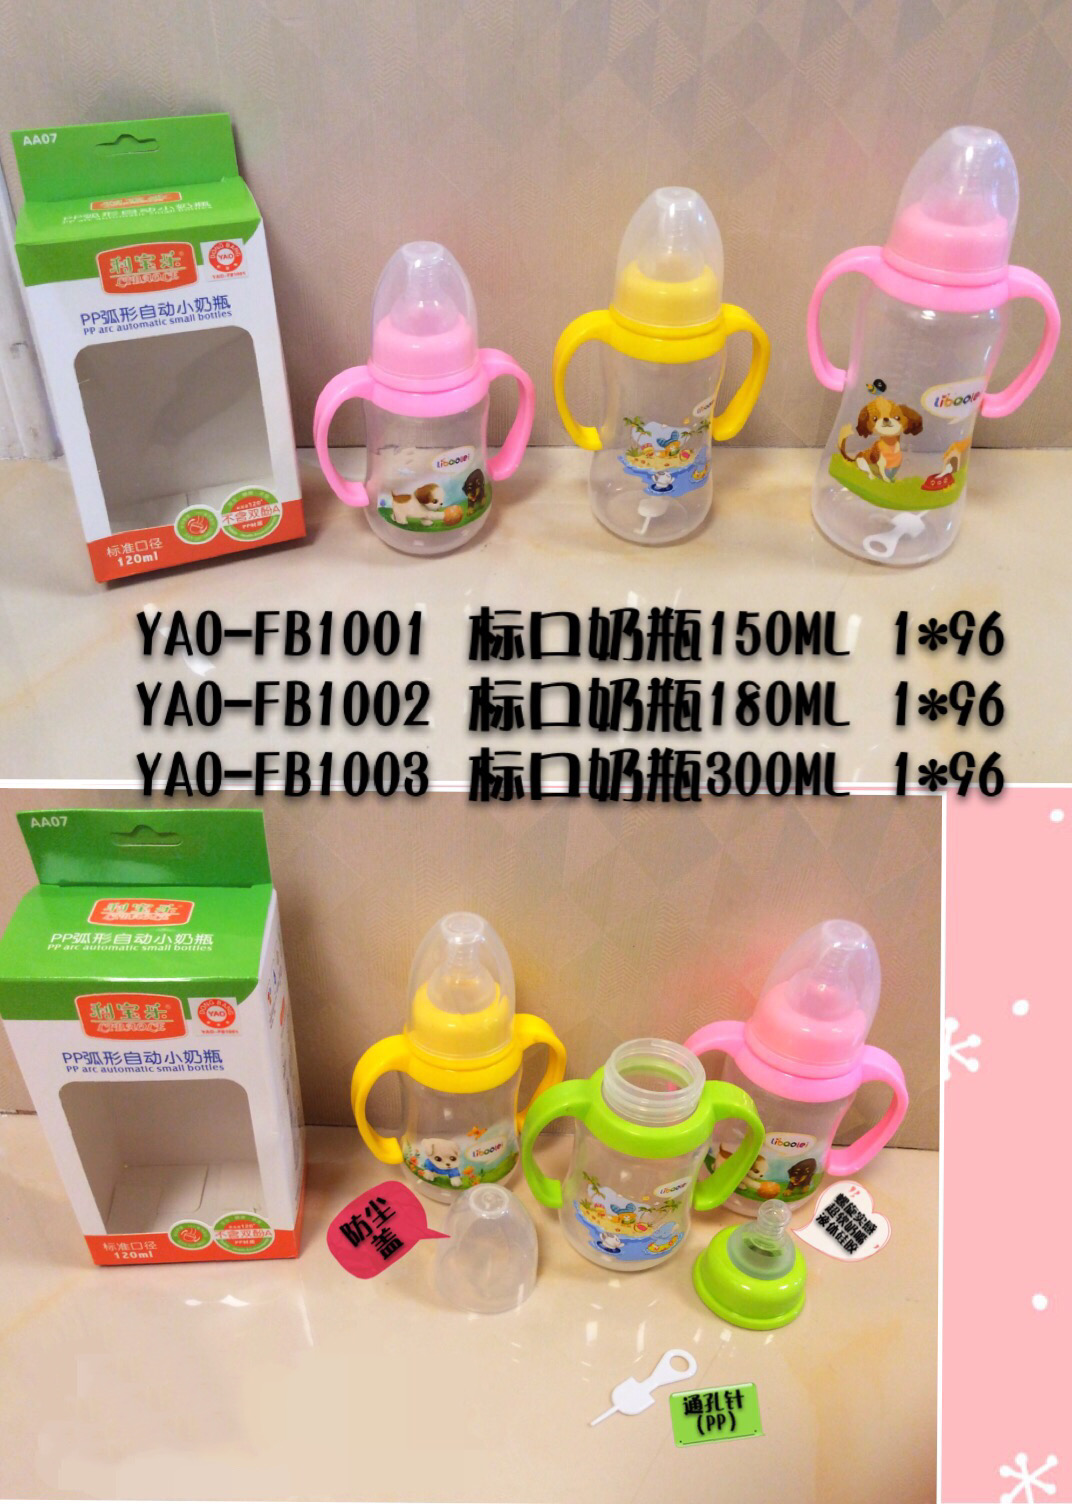 YAO-FB1001、YAO-FB1002、YAO-FB1003 奶瓶